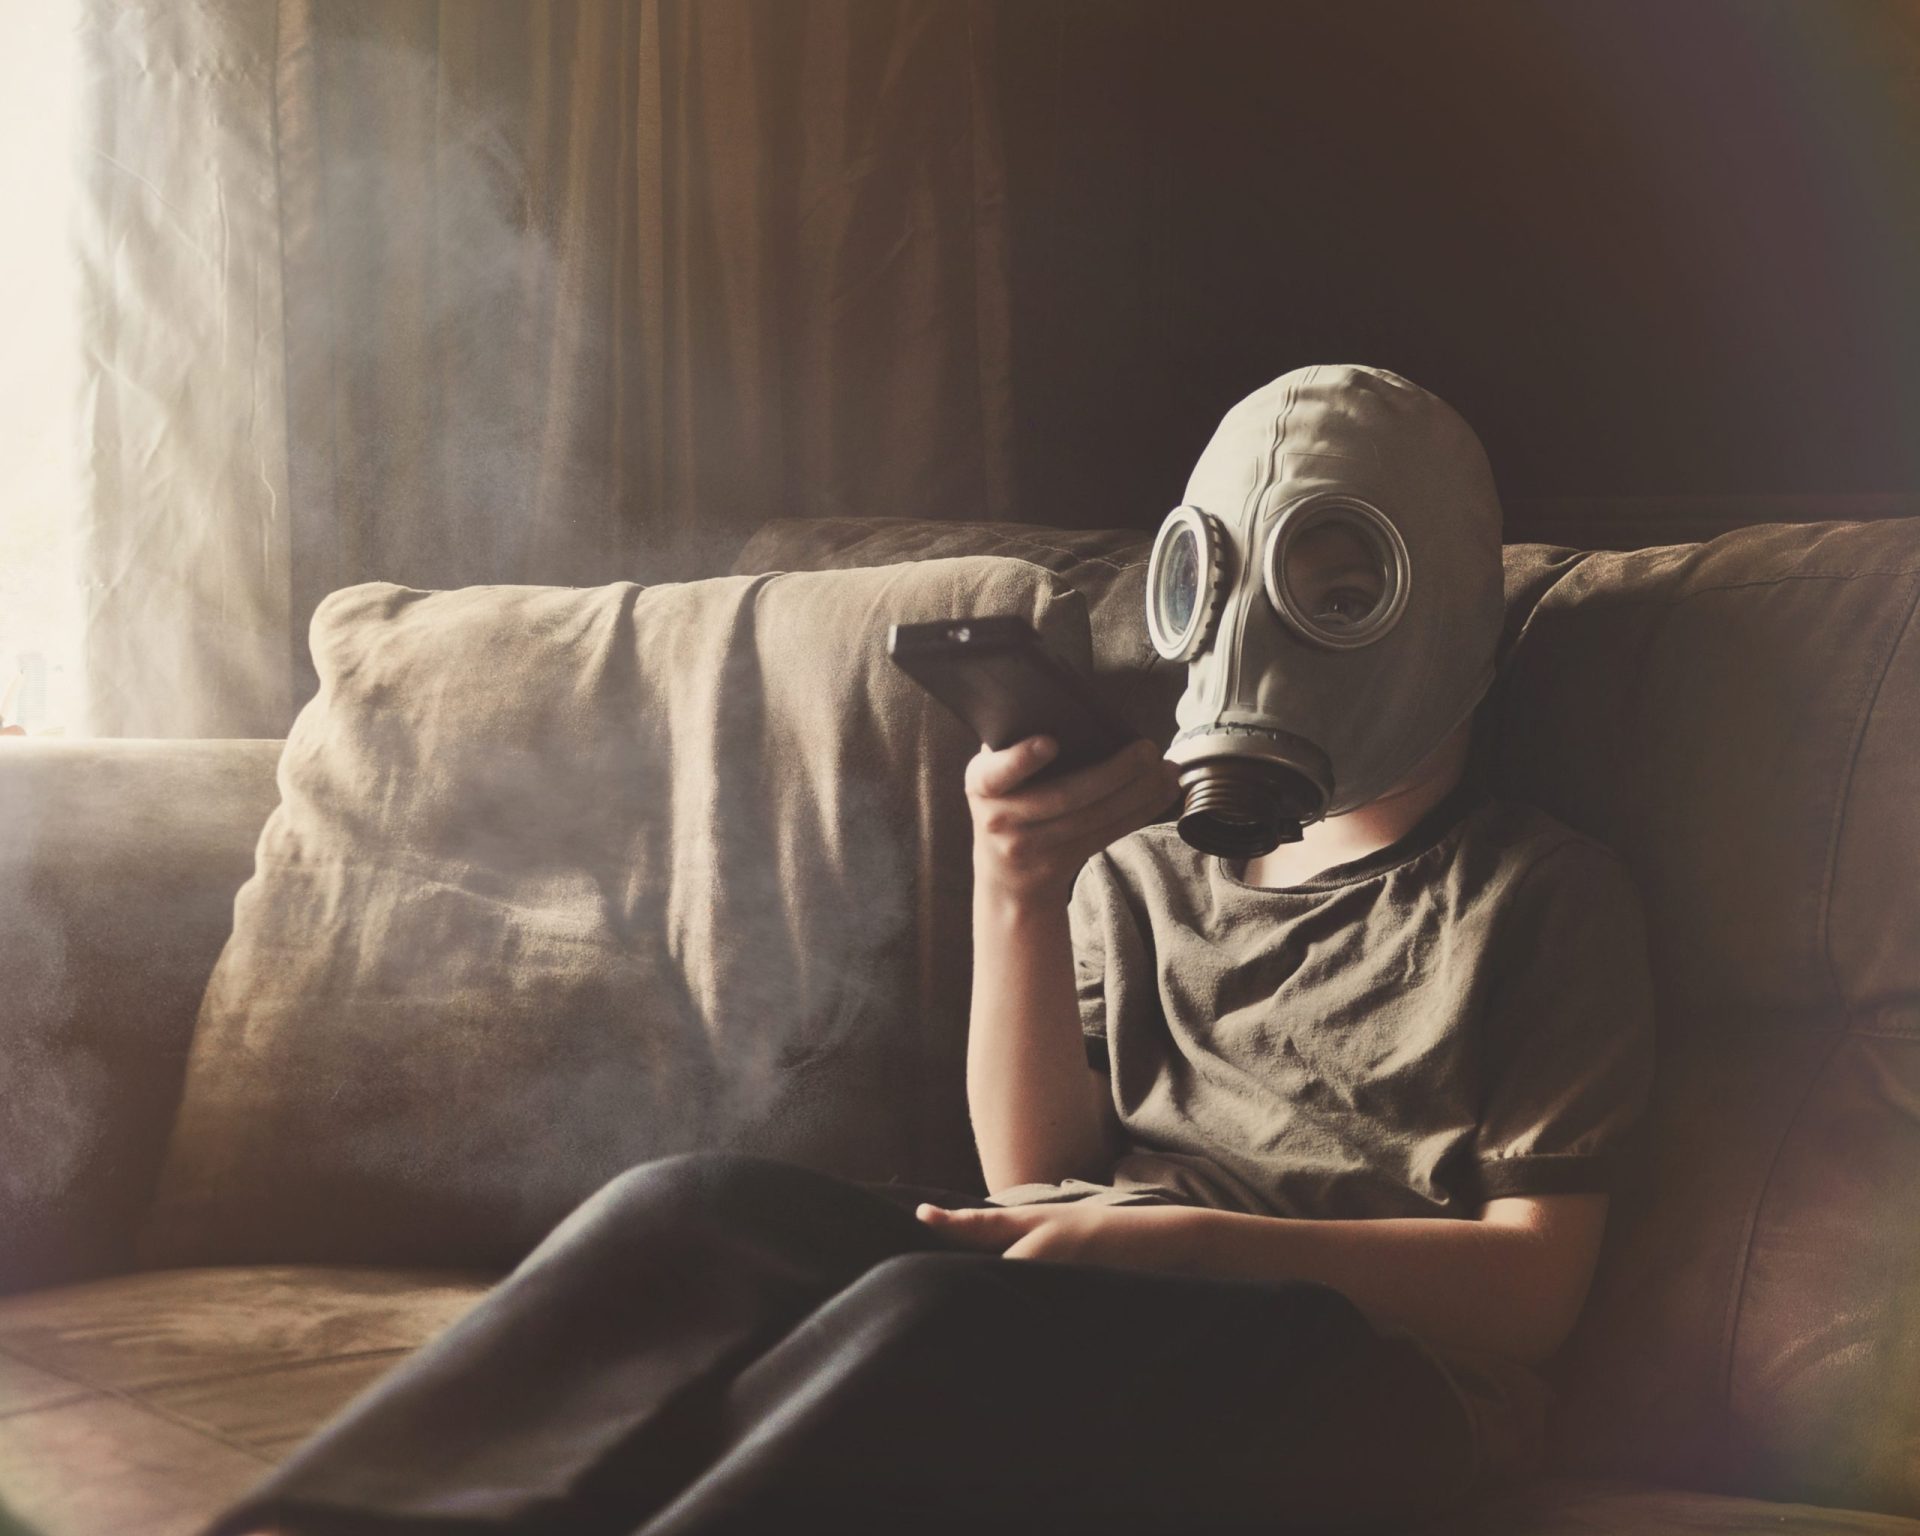 Sabia que o ar de sua casa pode ser tóxico? Algumas formas para o melhorar